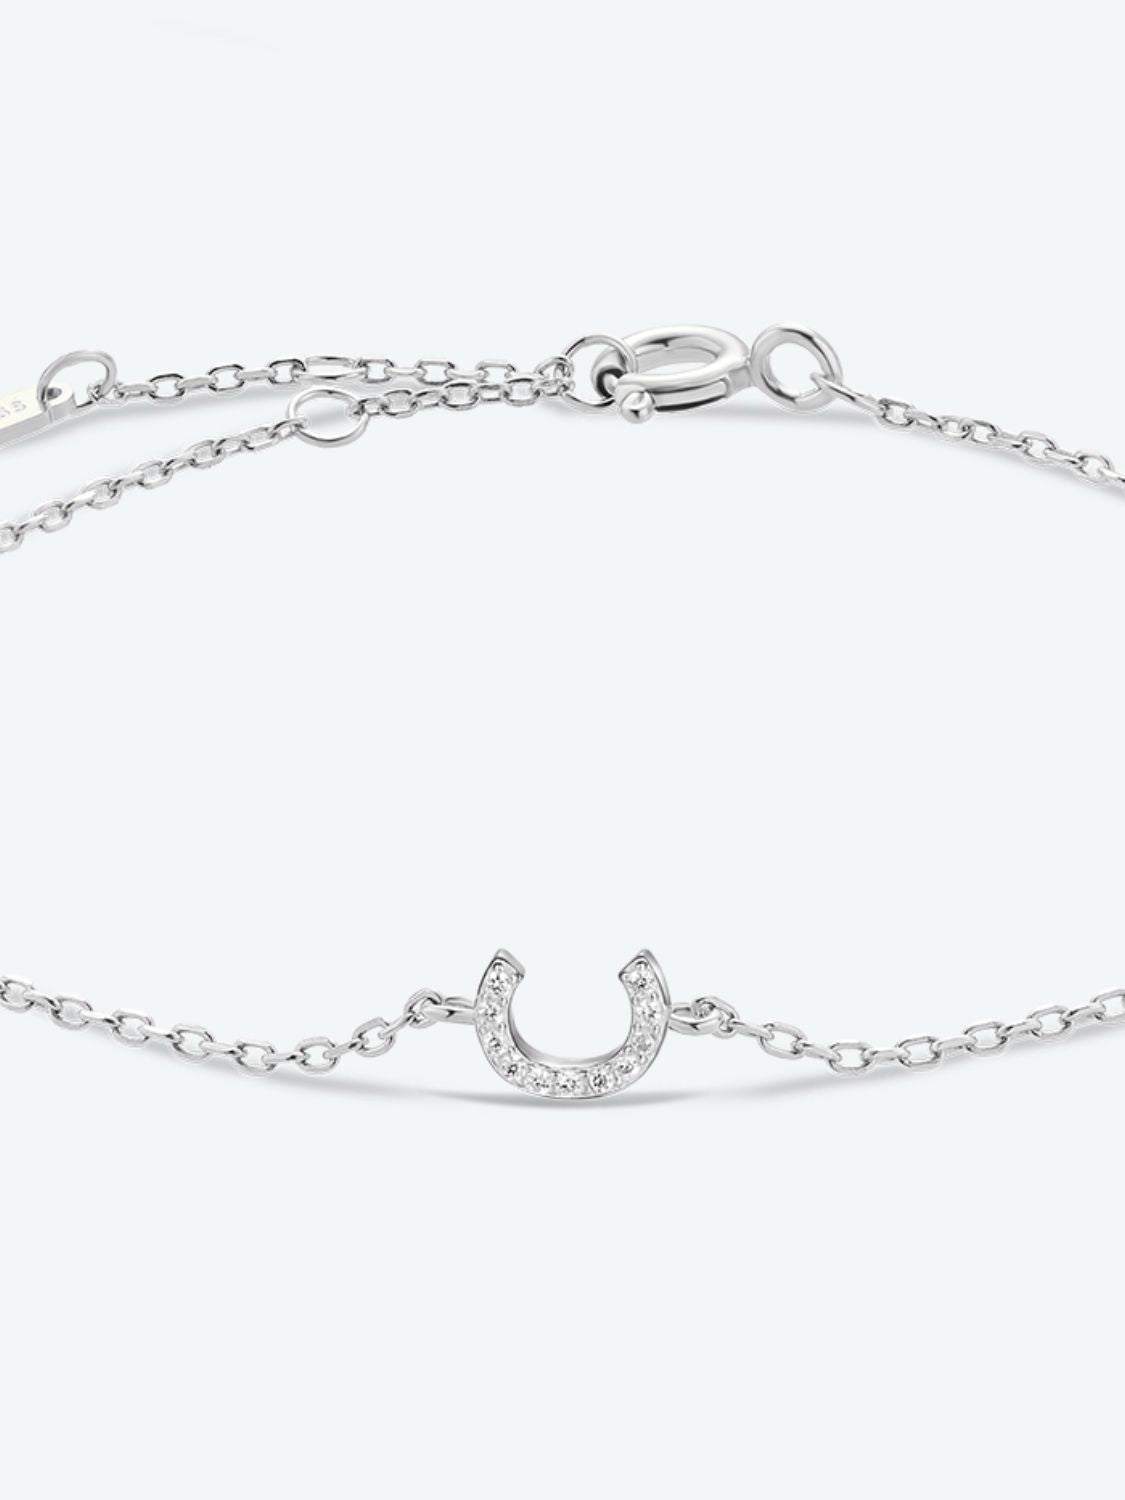 A To F Zircon 925 Sterling Silver Bracelet - Women’s Jewelry - Bracelets - 18 - 2024